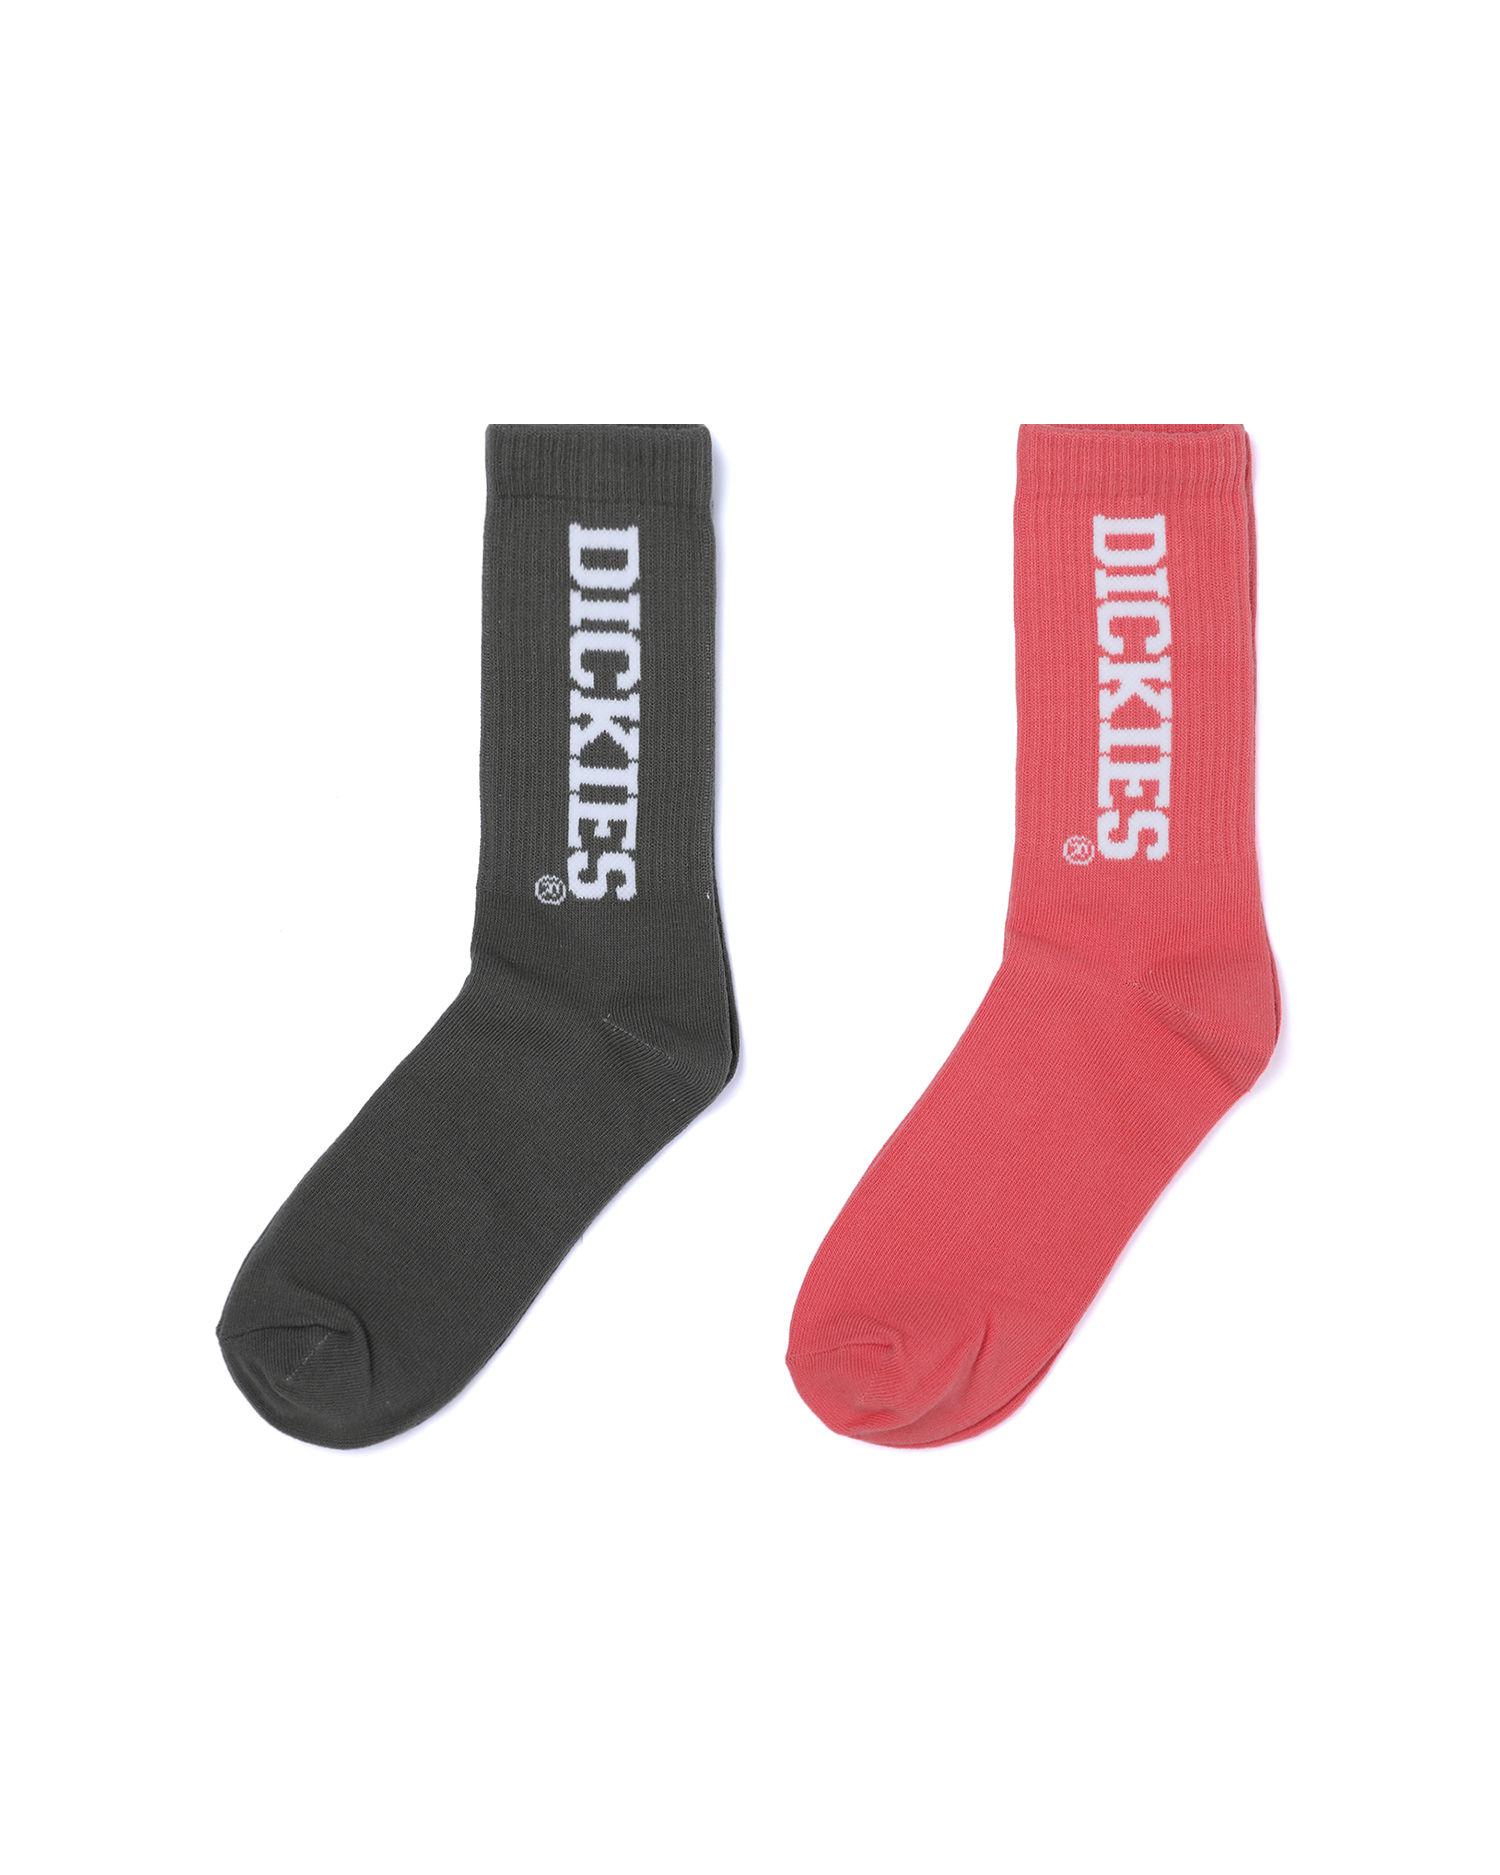 Logo socks - 2 pack by DICKIES